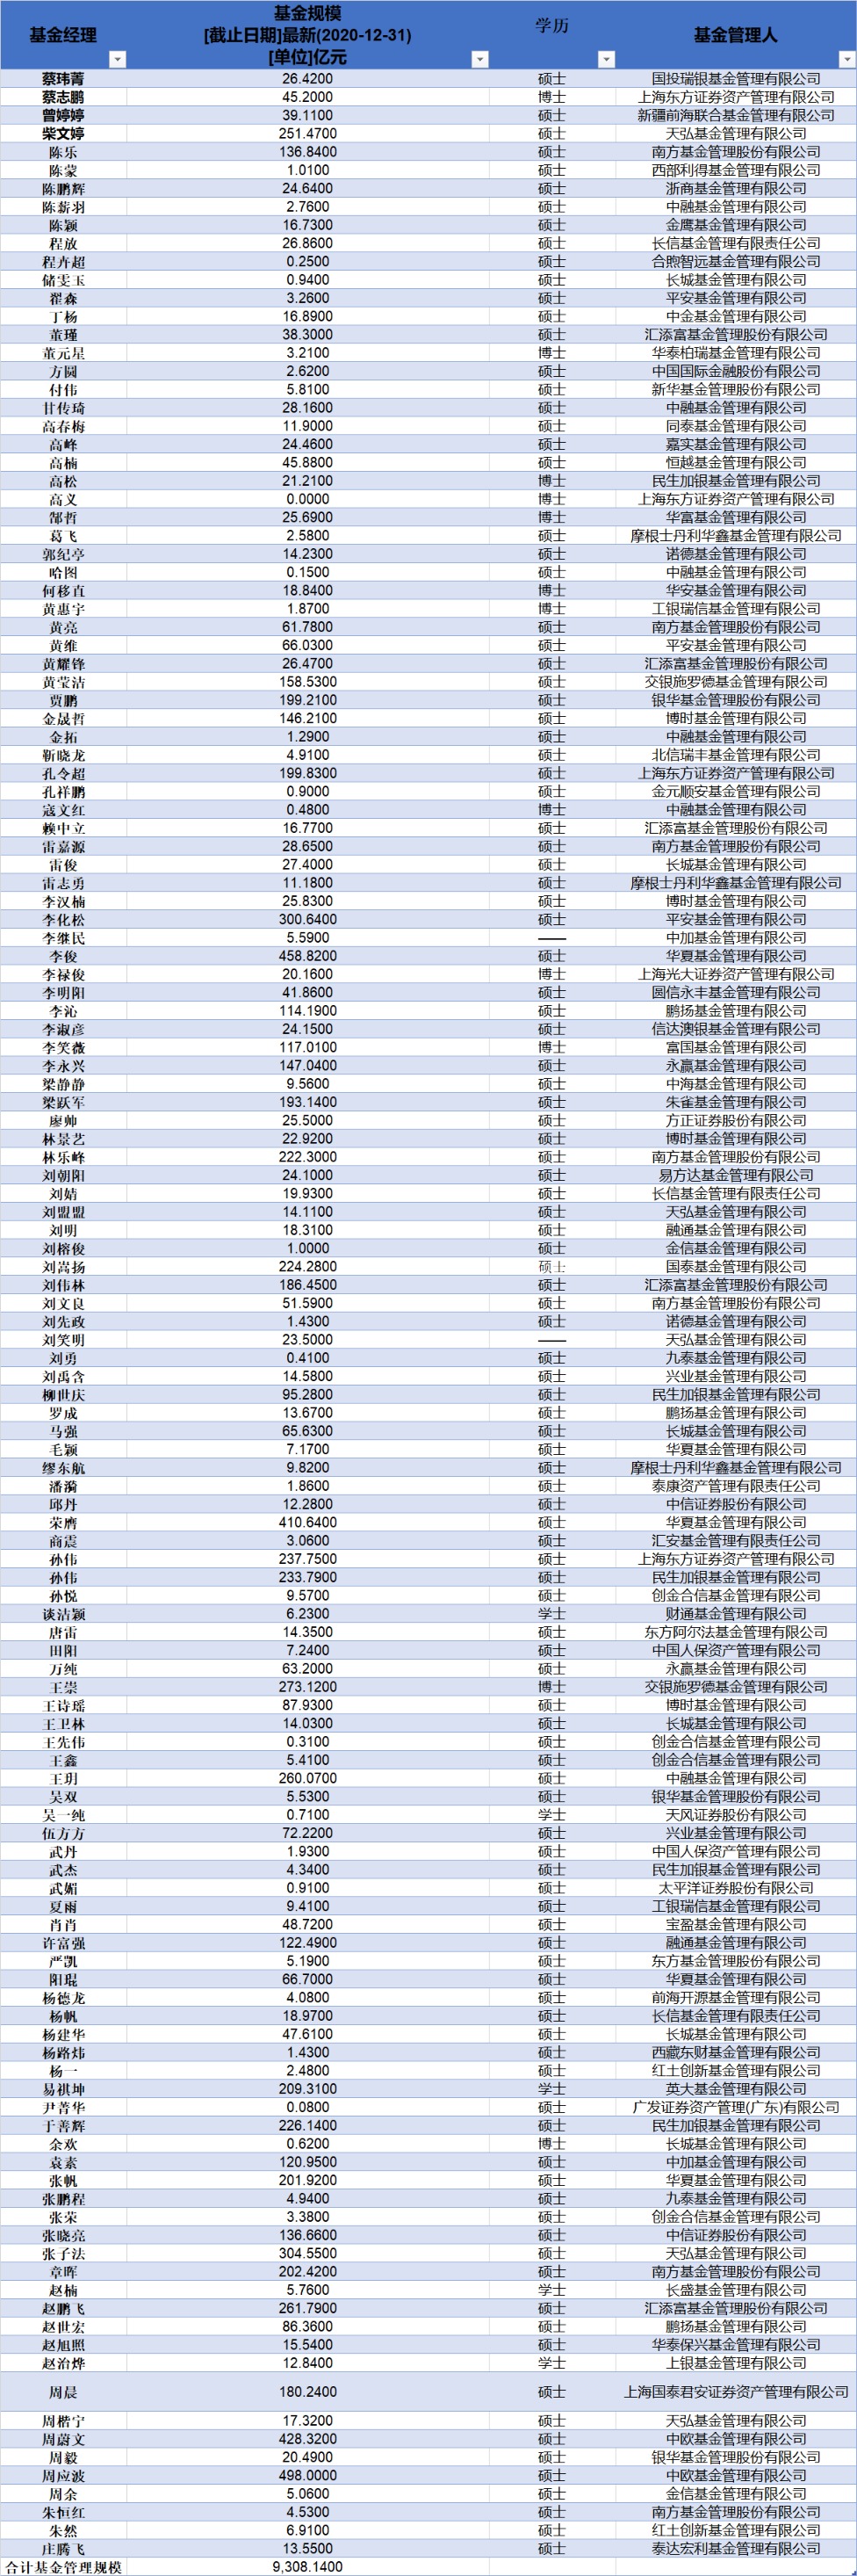 北京大学基金经理人数及持有基金规模统计 